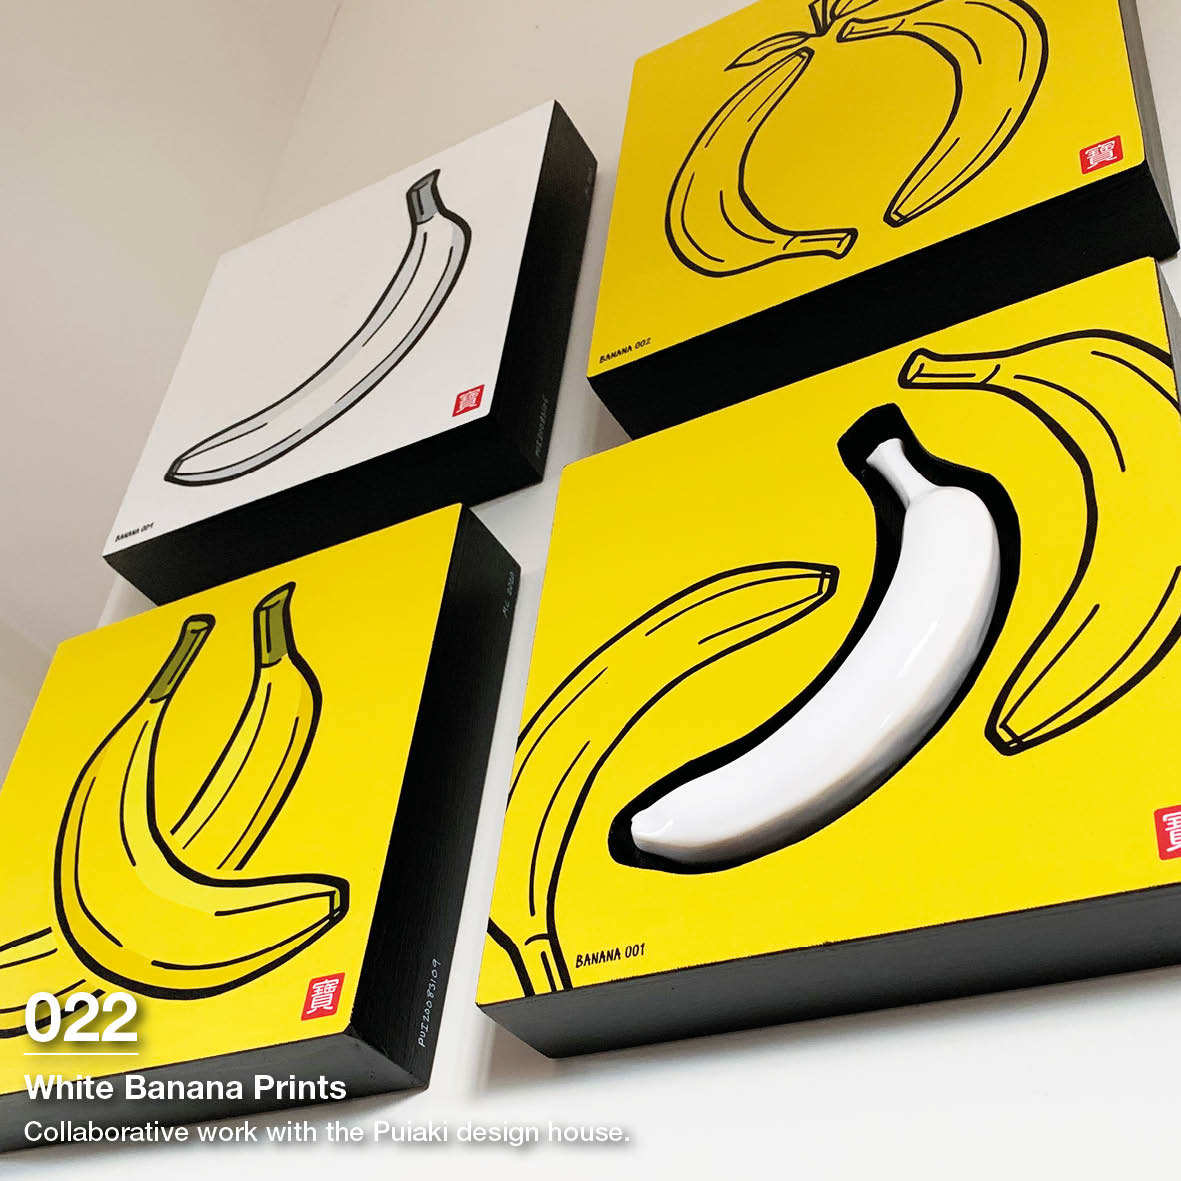 White Bananas - Puiaki Style